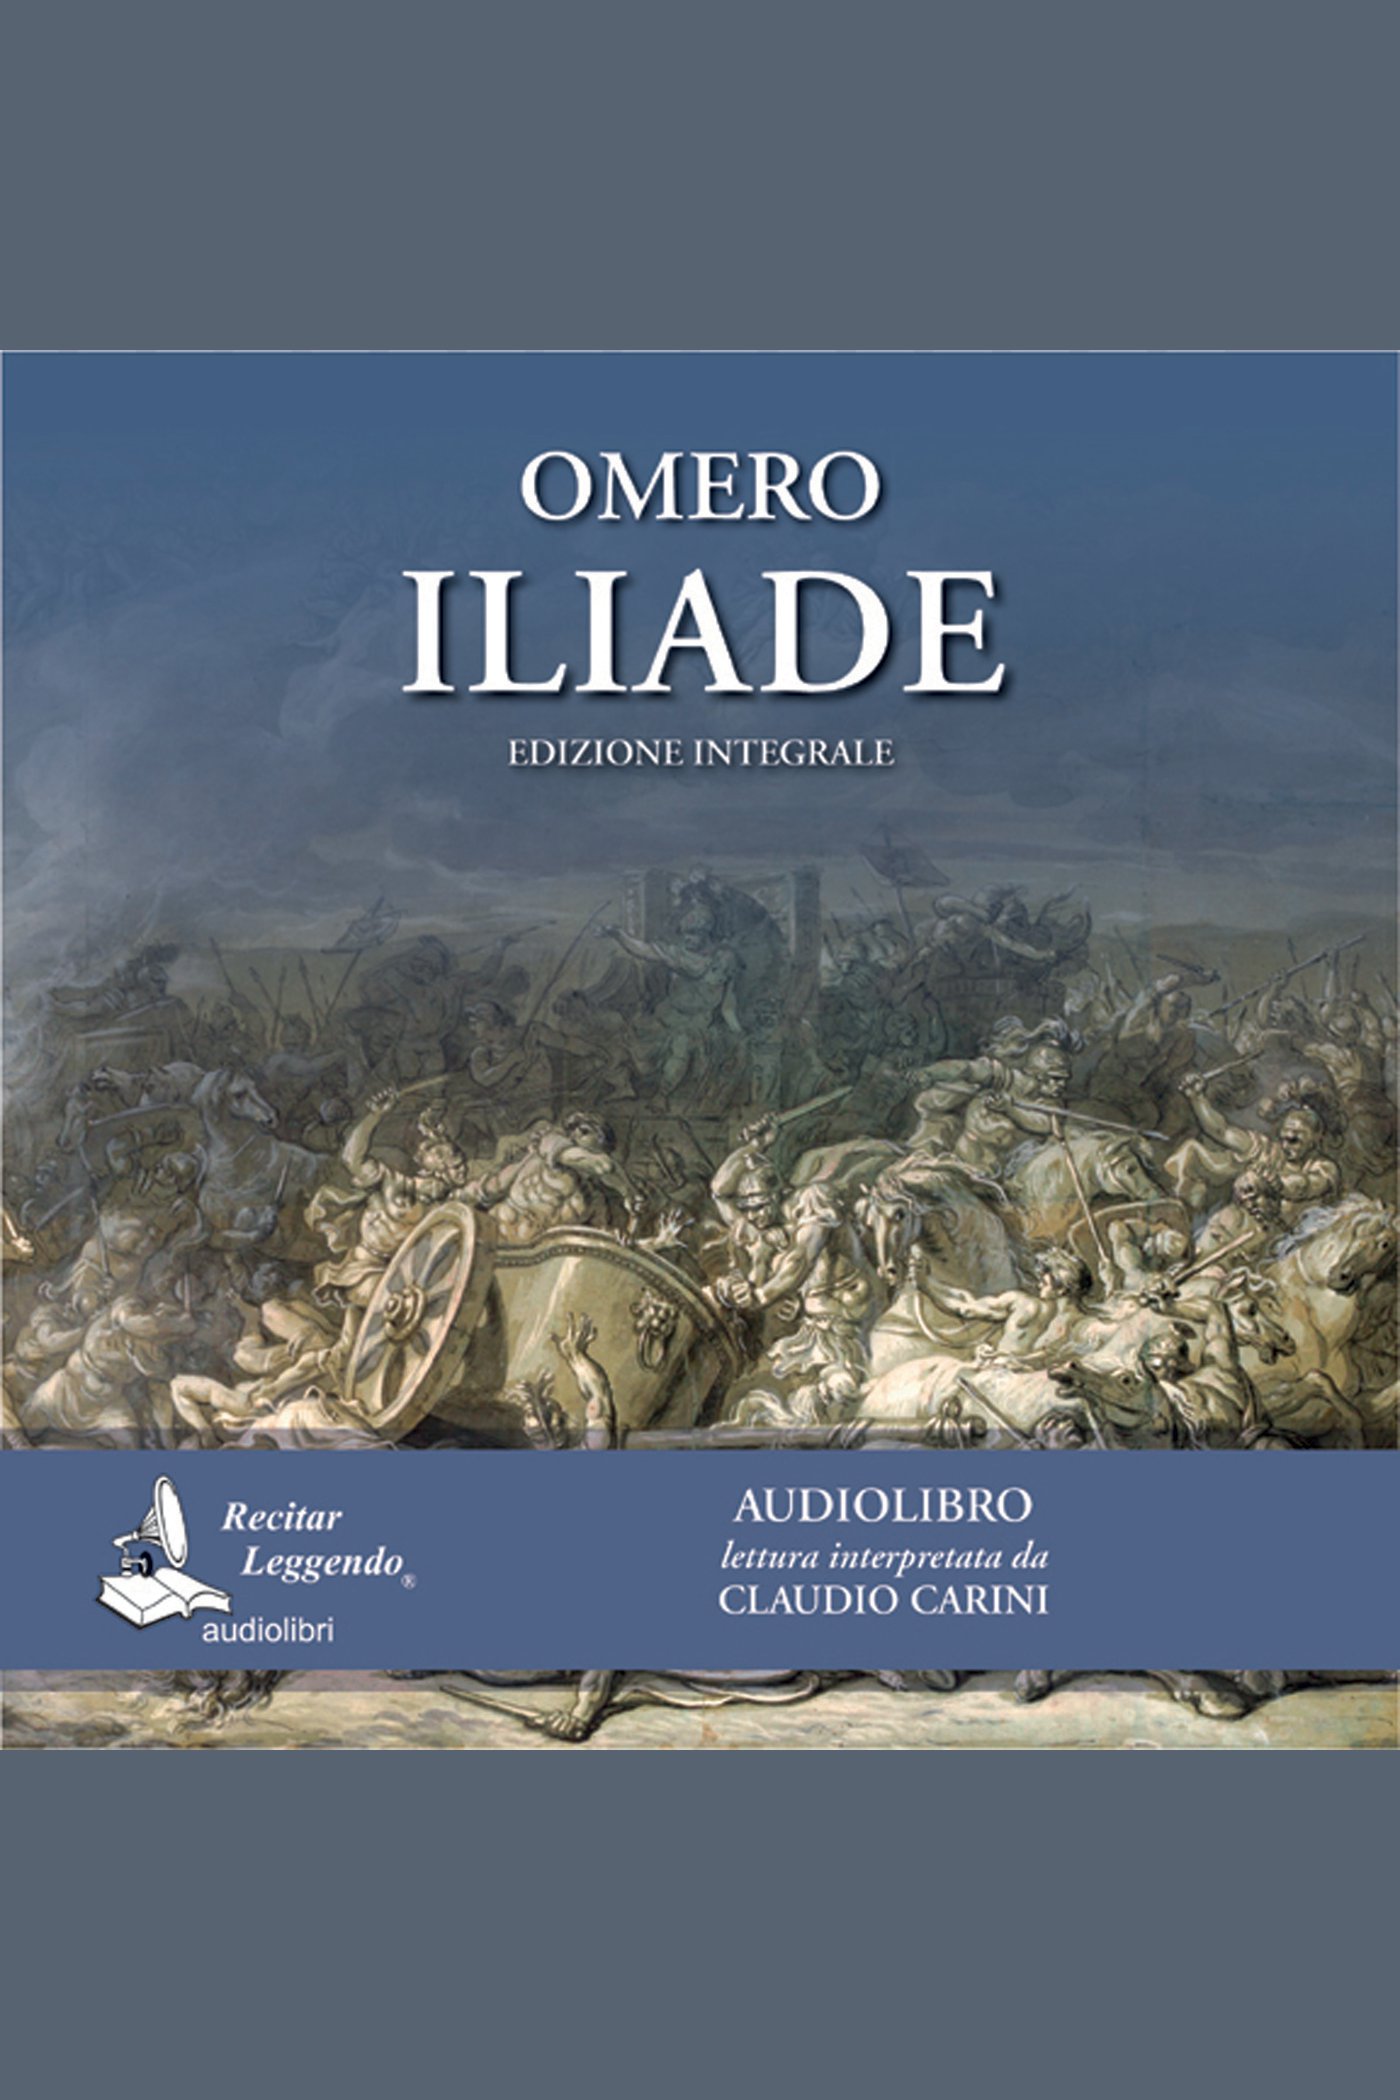 Iliade cover image